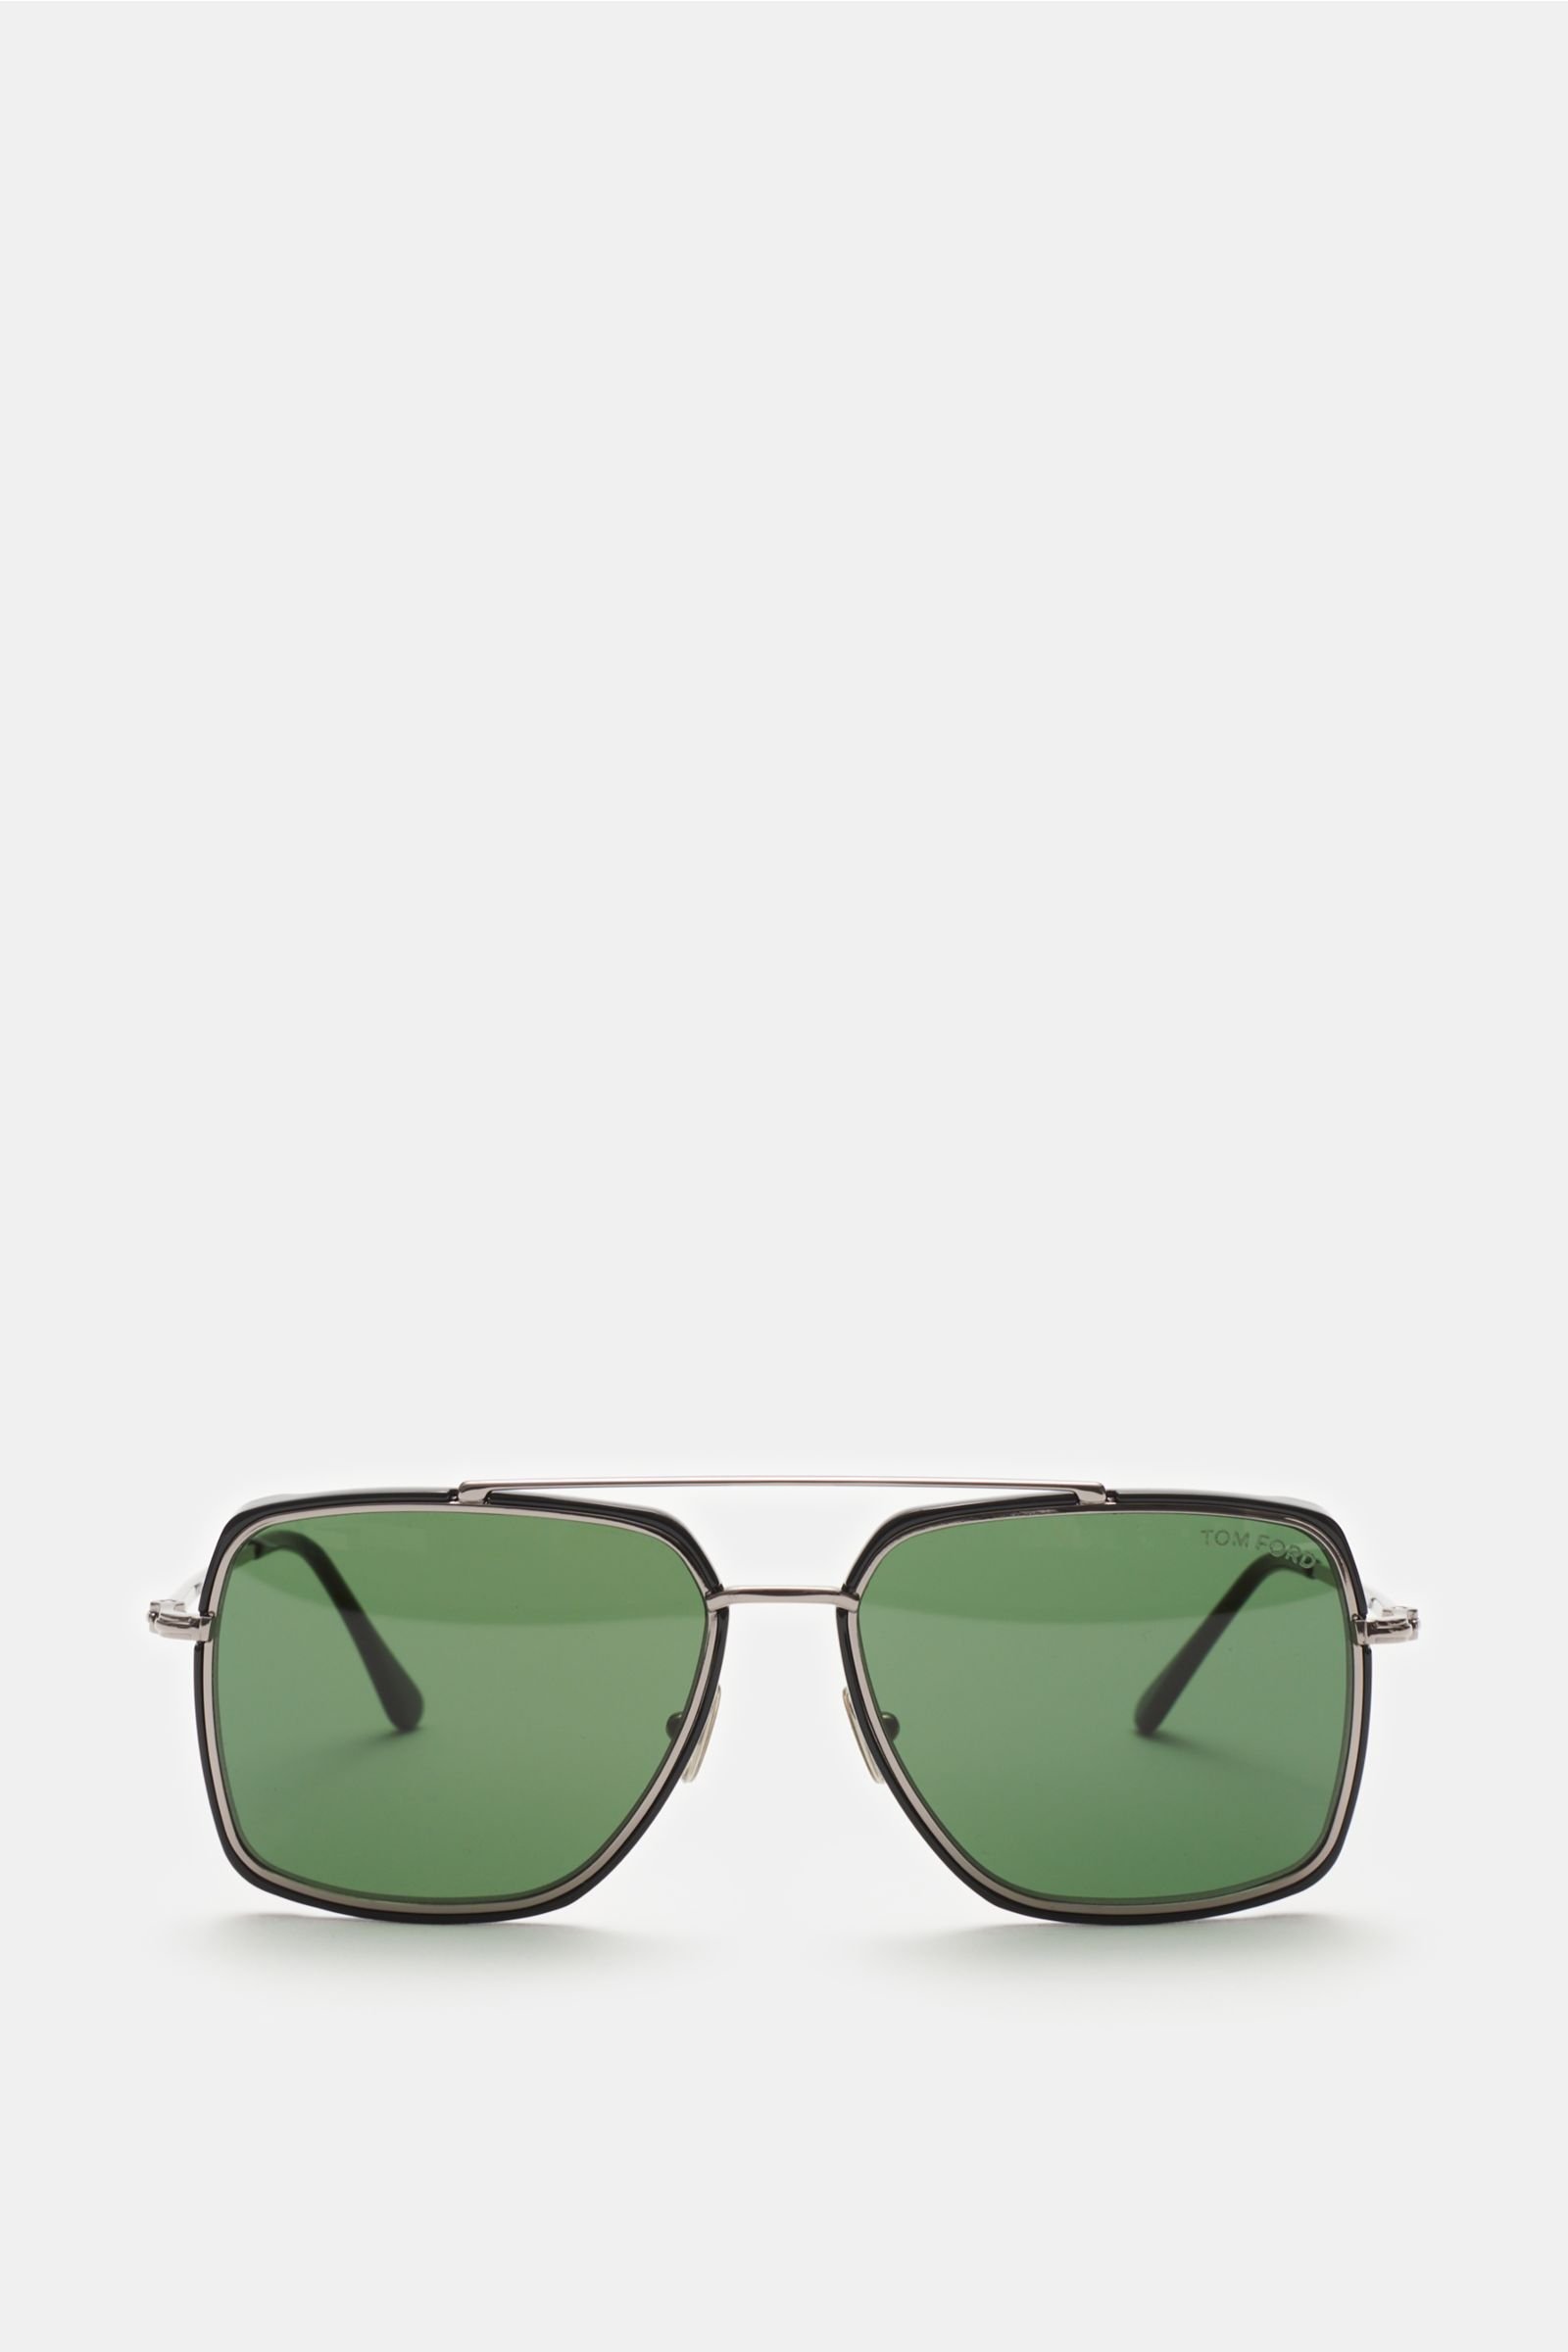 Sunglasses 'Lionel' silver/green